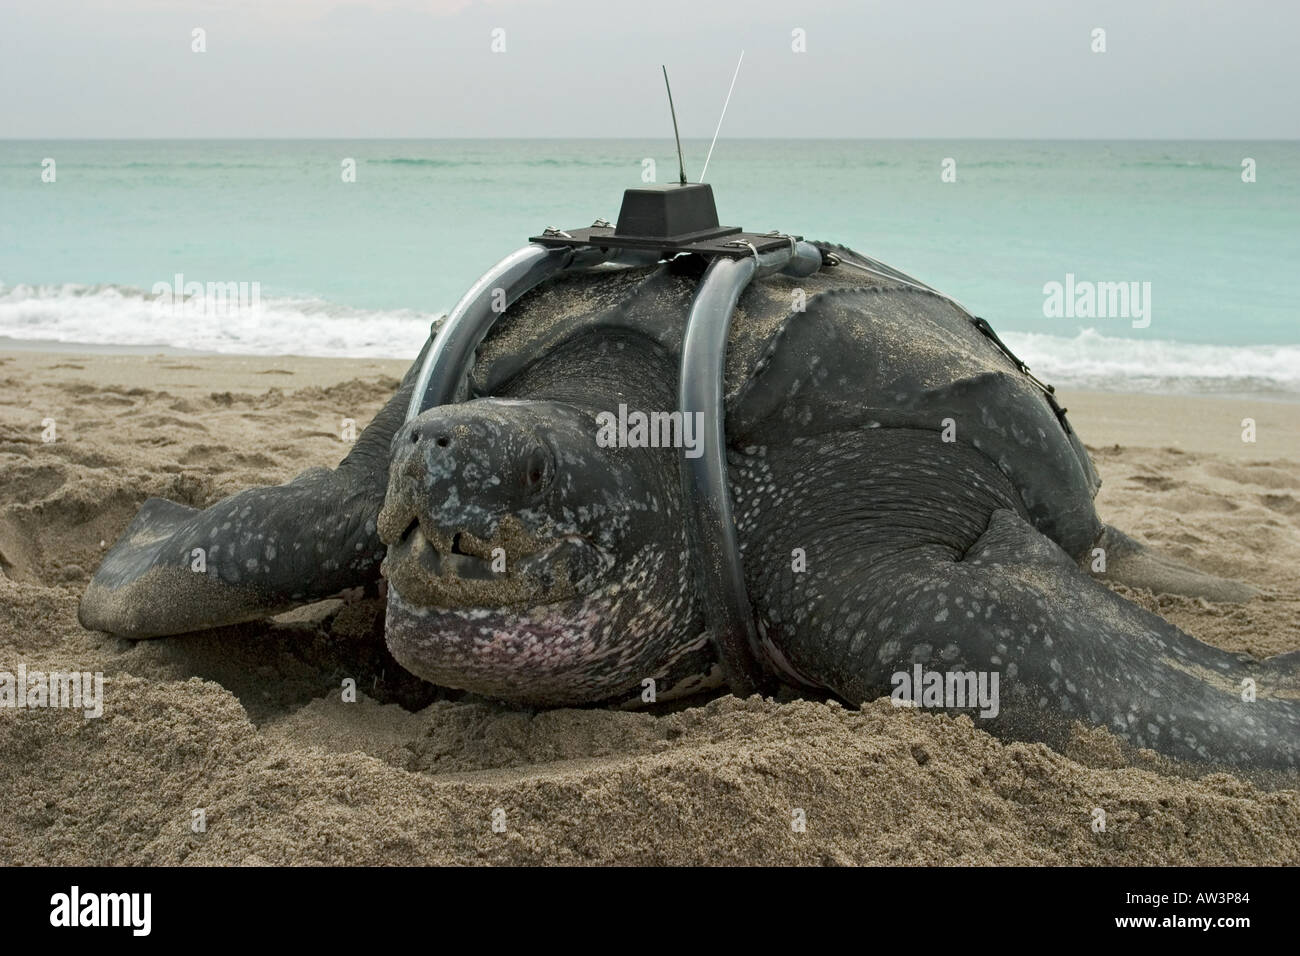 Leatherback sea turtle (Dermochelys coriacea) with satellite transmitter at dawn Stock Photo